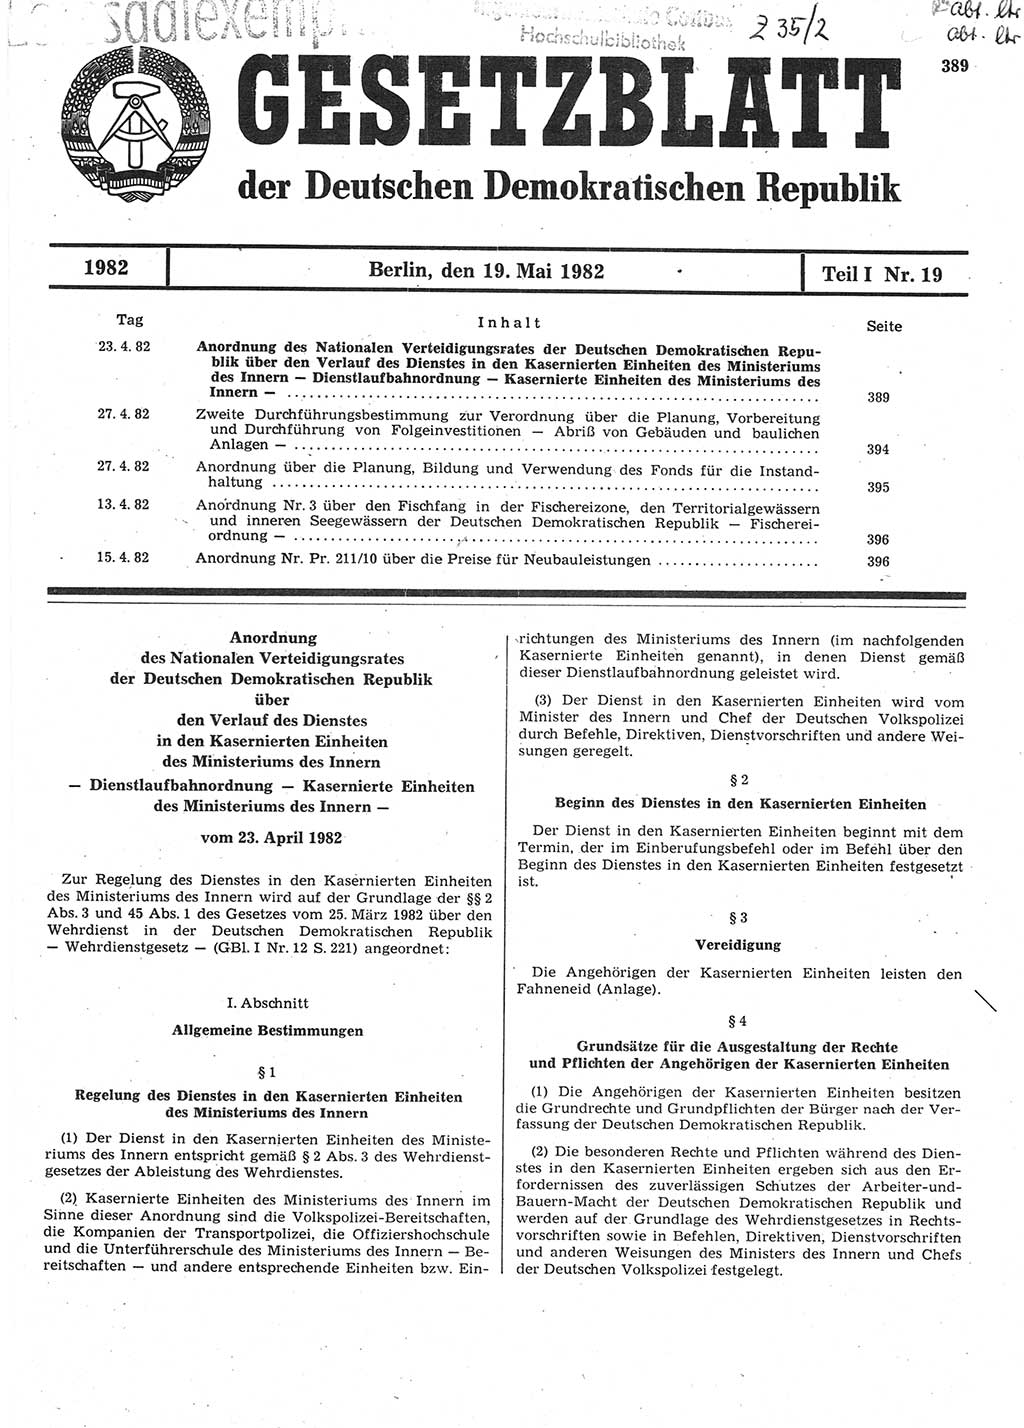 Gesetzblatt (GBl.) der Deutschen Demokratischen Republik (DDR) Teil Ⅰ 1982, Seite 389 (GBl. DDR Ⅰ 1982, S. 389)